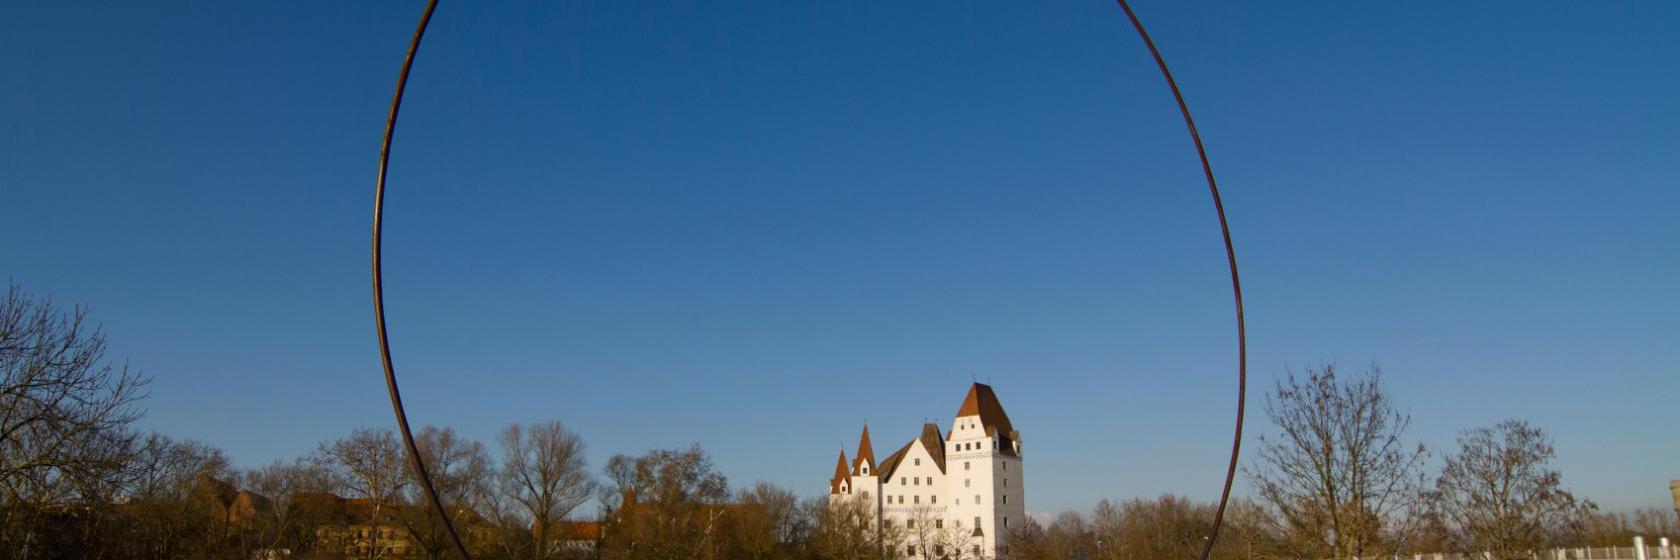 インゴルシュタット ドイツ の人気ホテル10軒 6 317